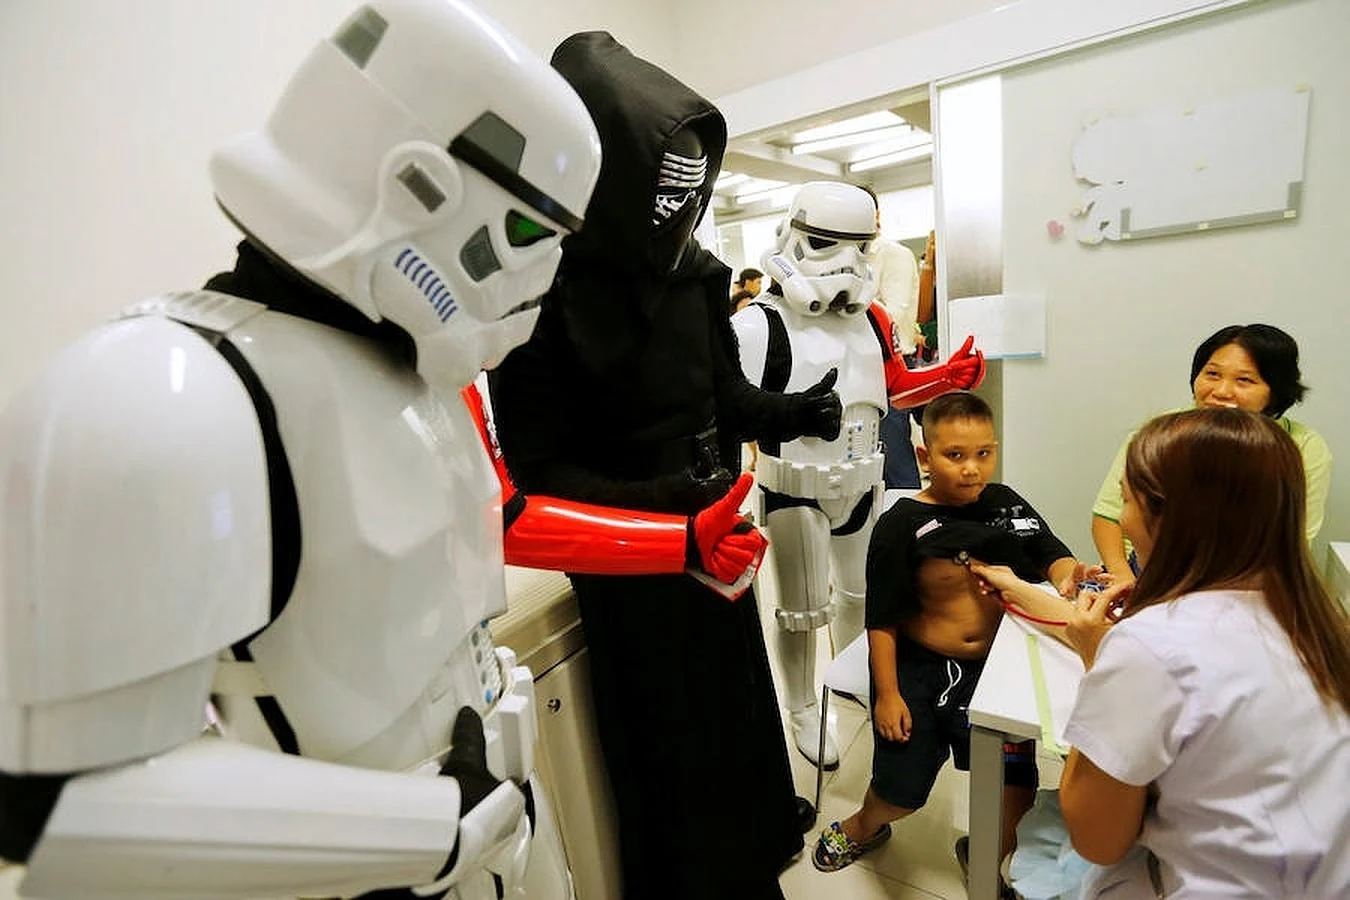 Un grupo de fans, uno de ellos disfrazado de Ben Solo, acompañan a un niño durante su revisión médica